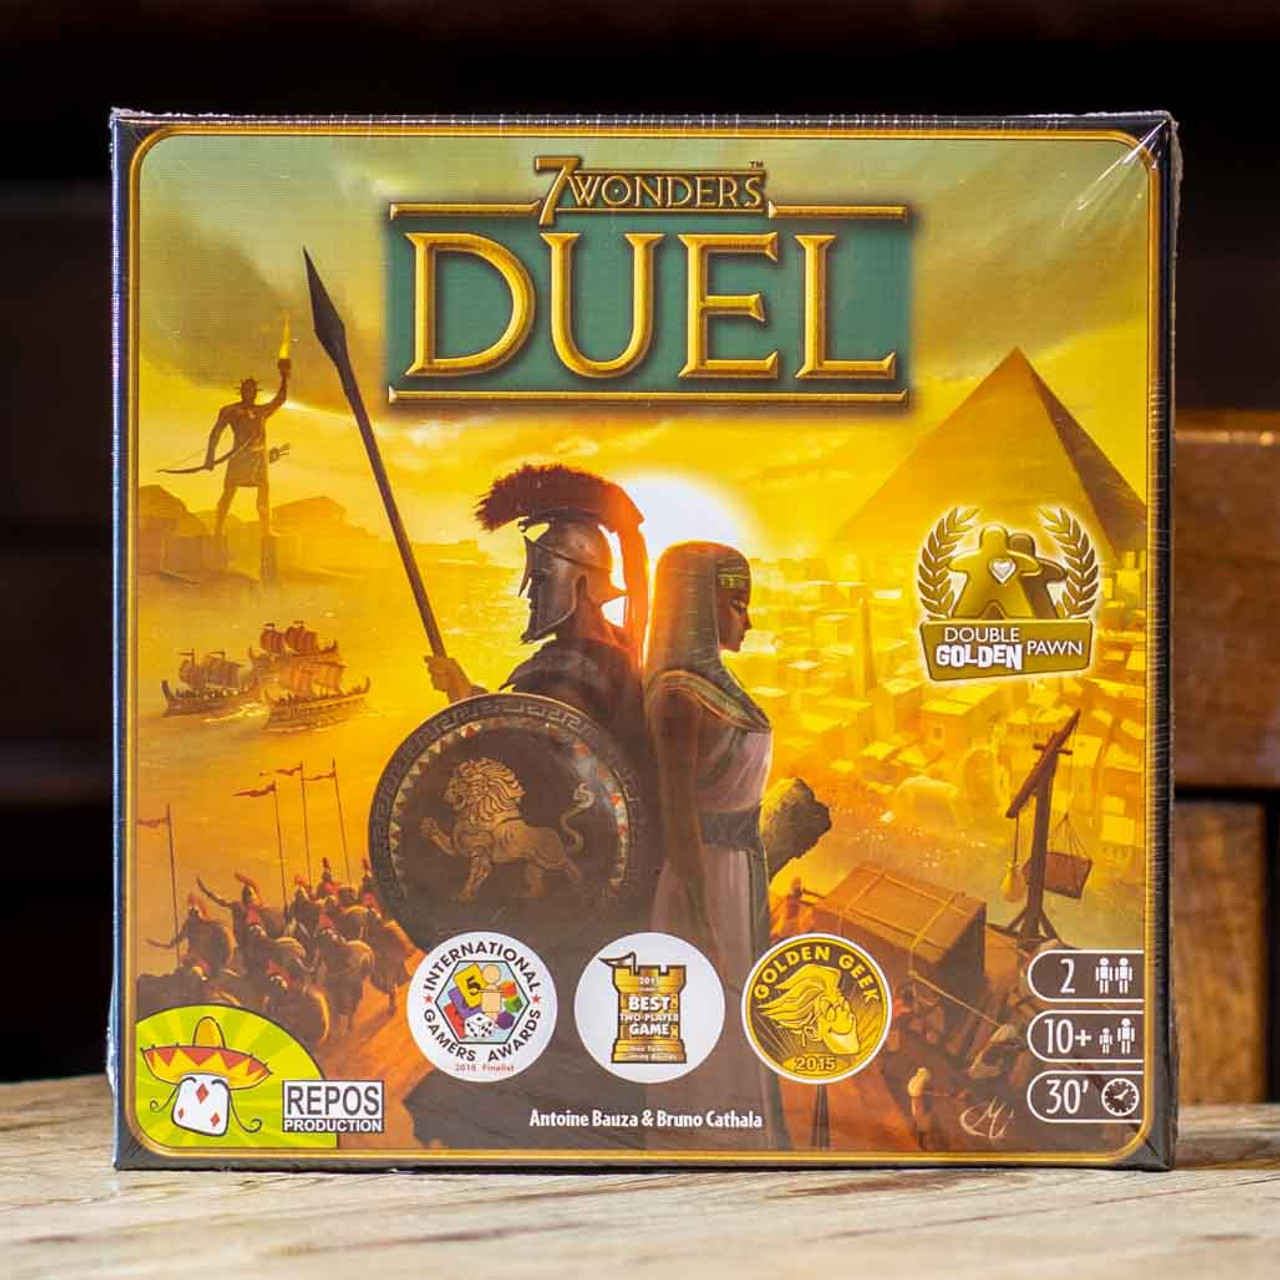 7 Wonders Duel Board Game - Getty Museum Store